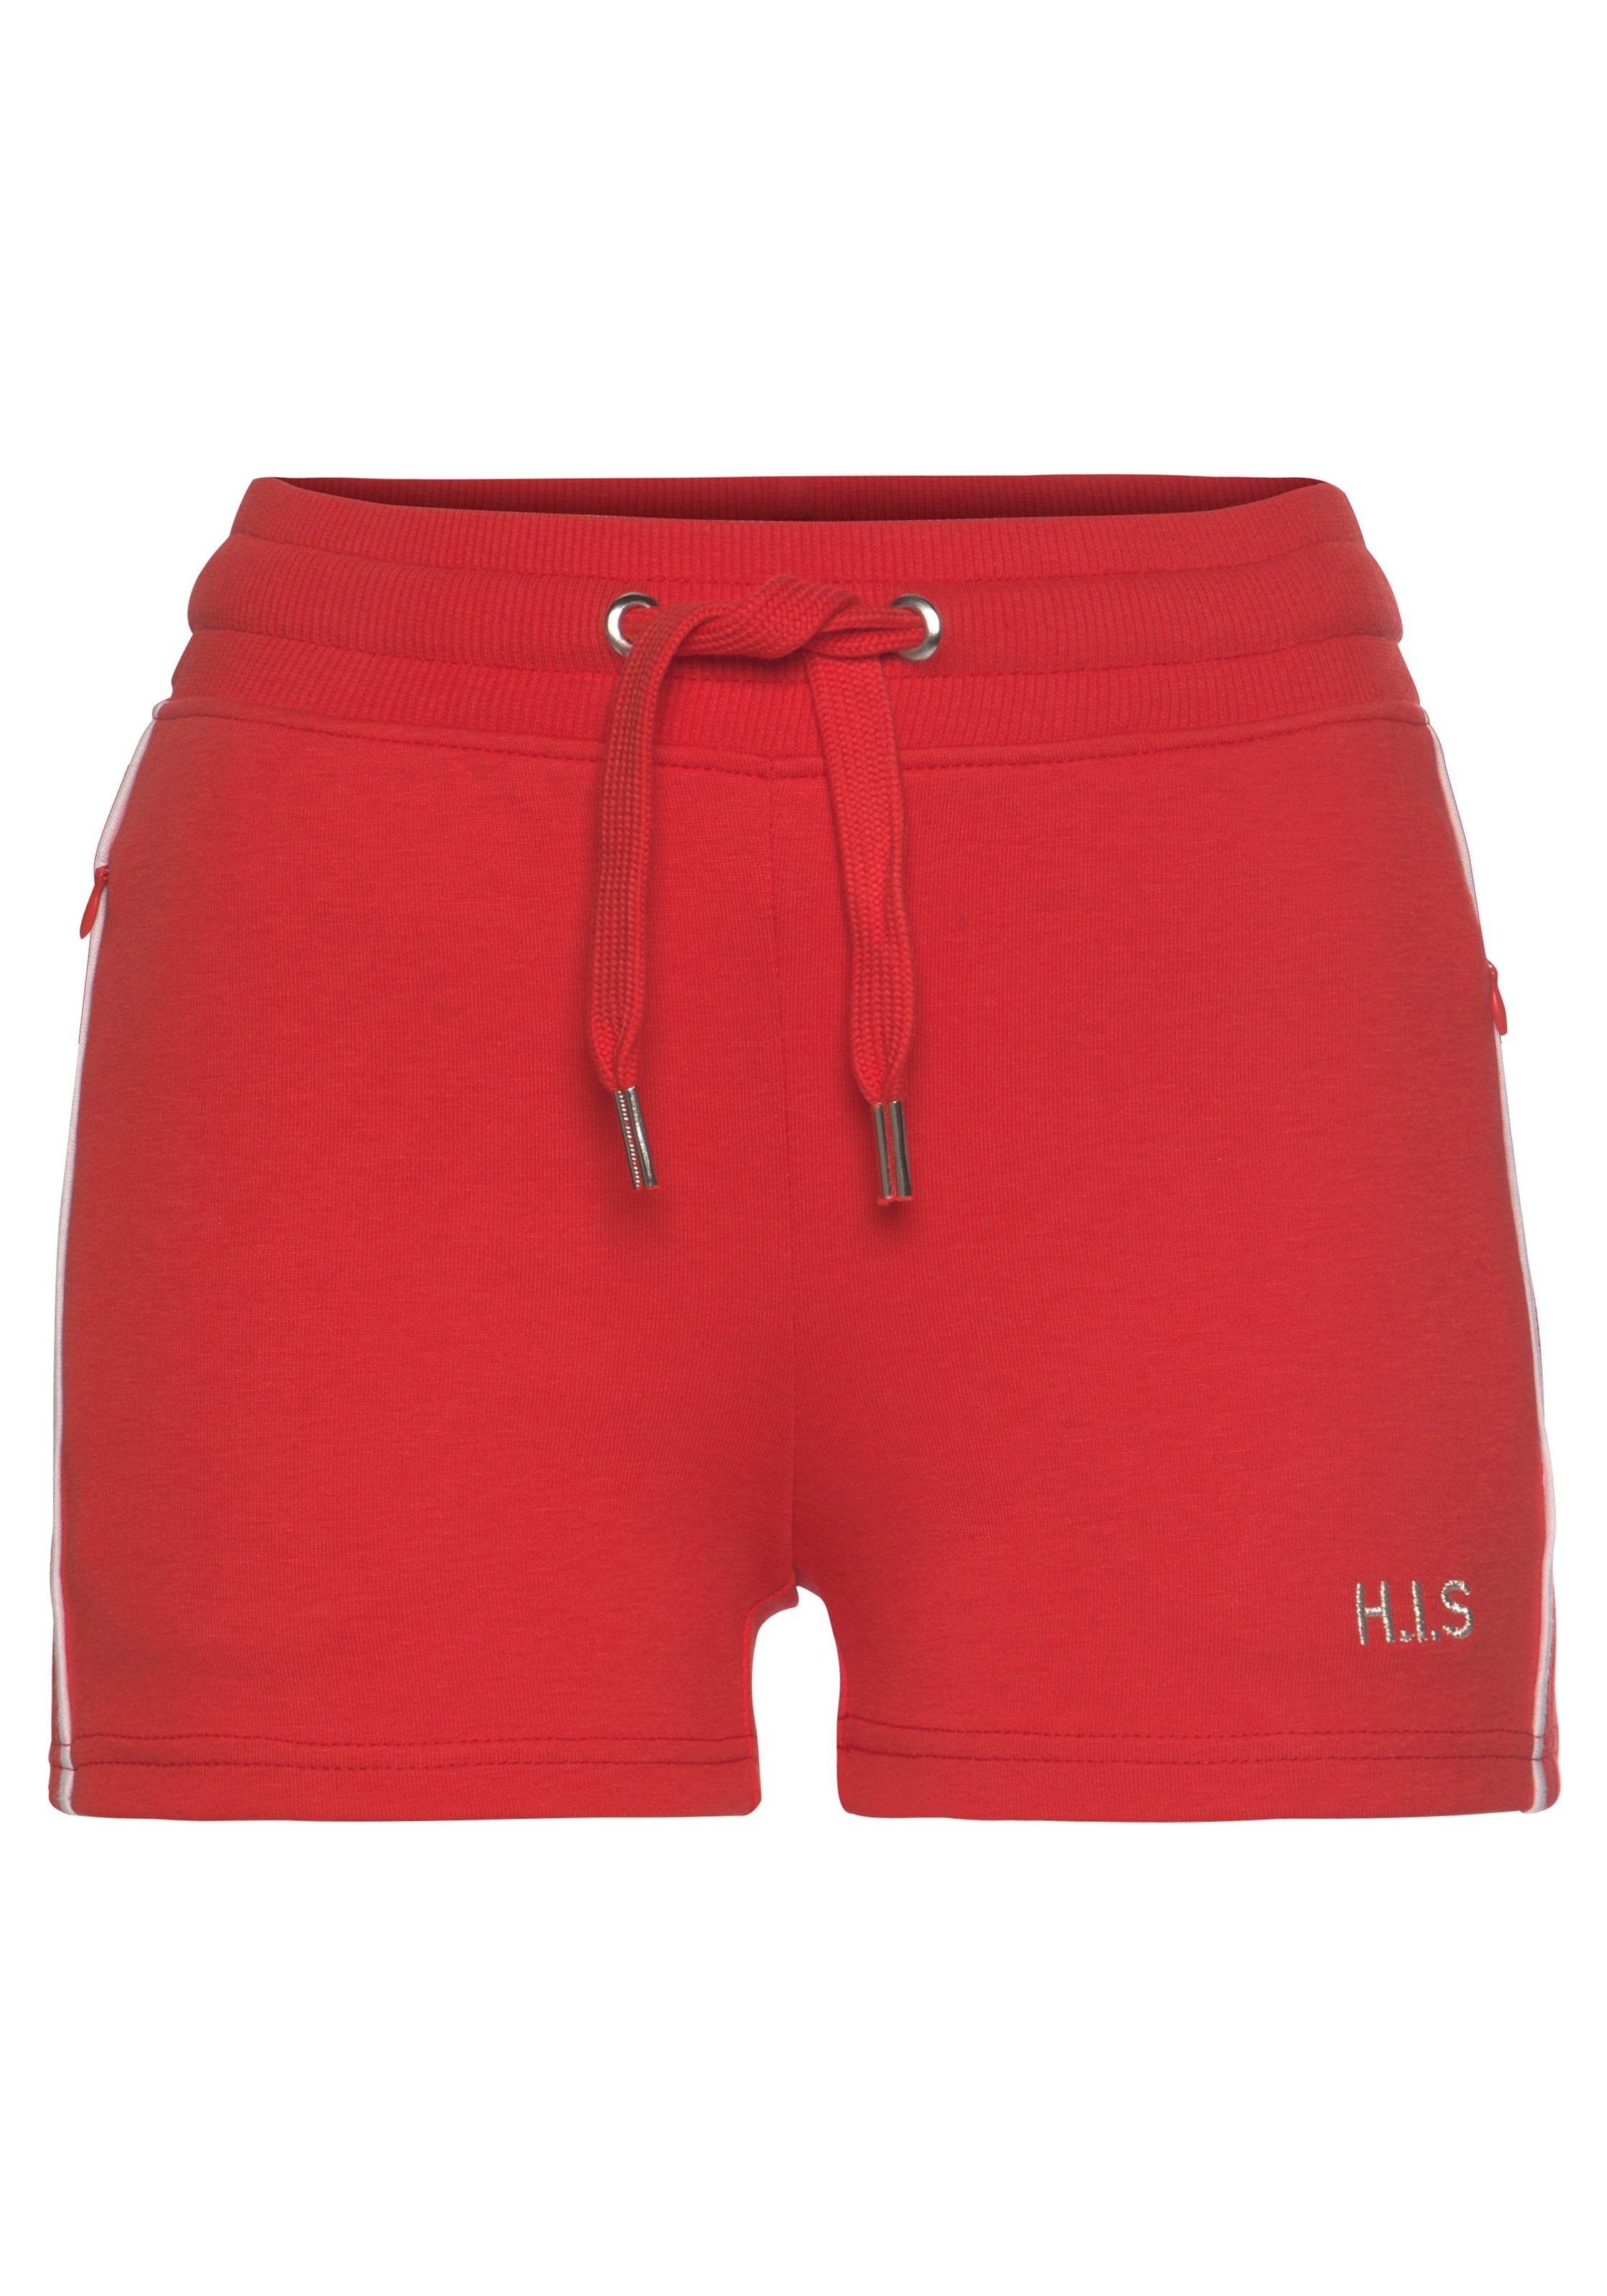 H.I.S Shorts, mit Piping an der Seite